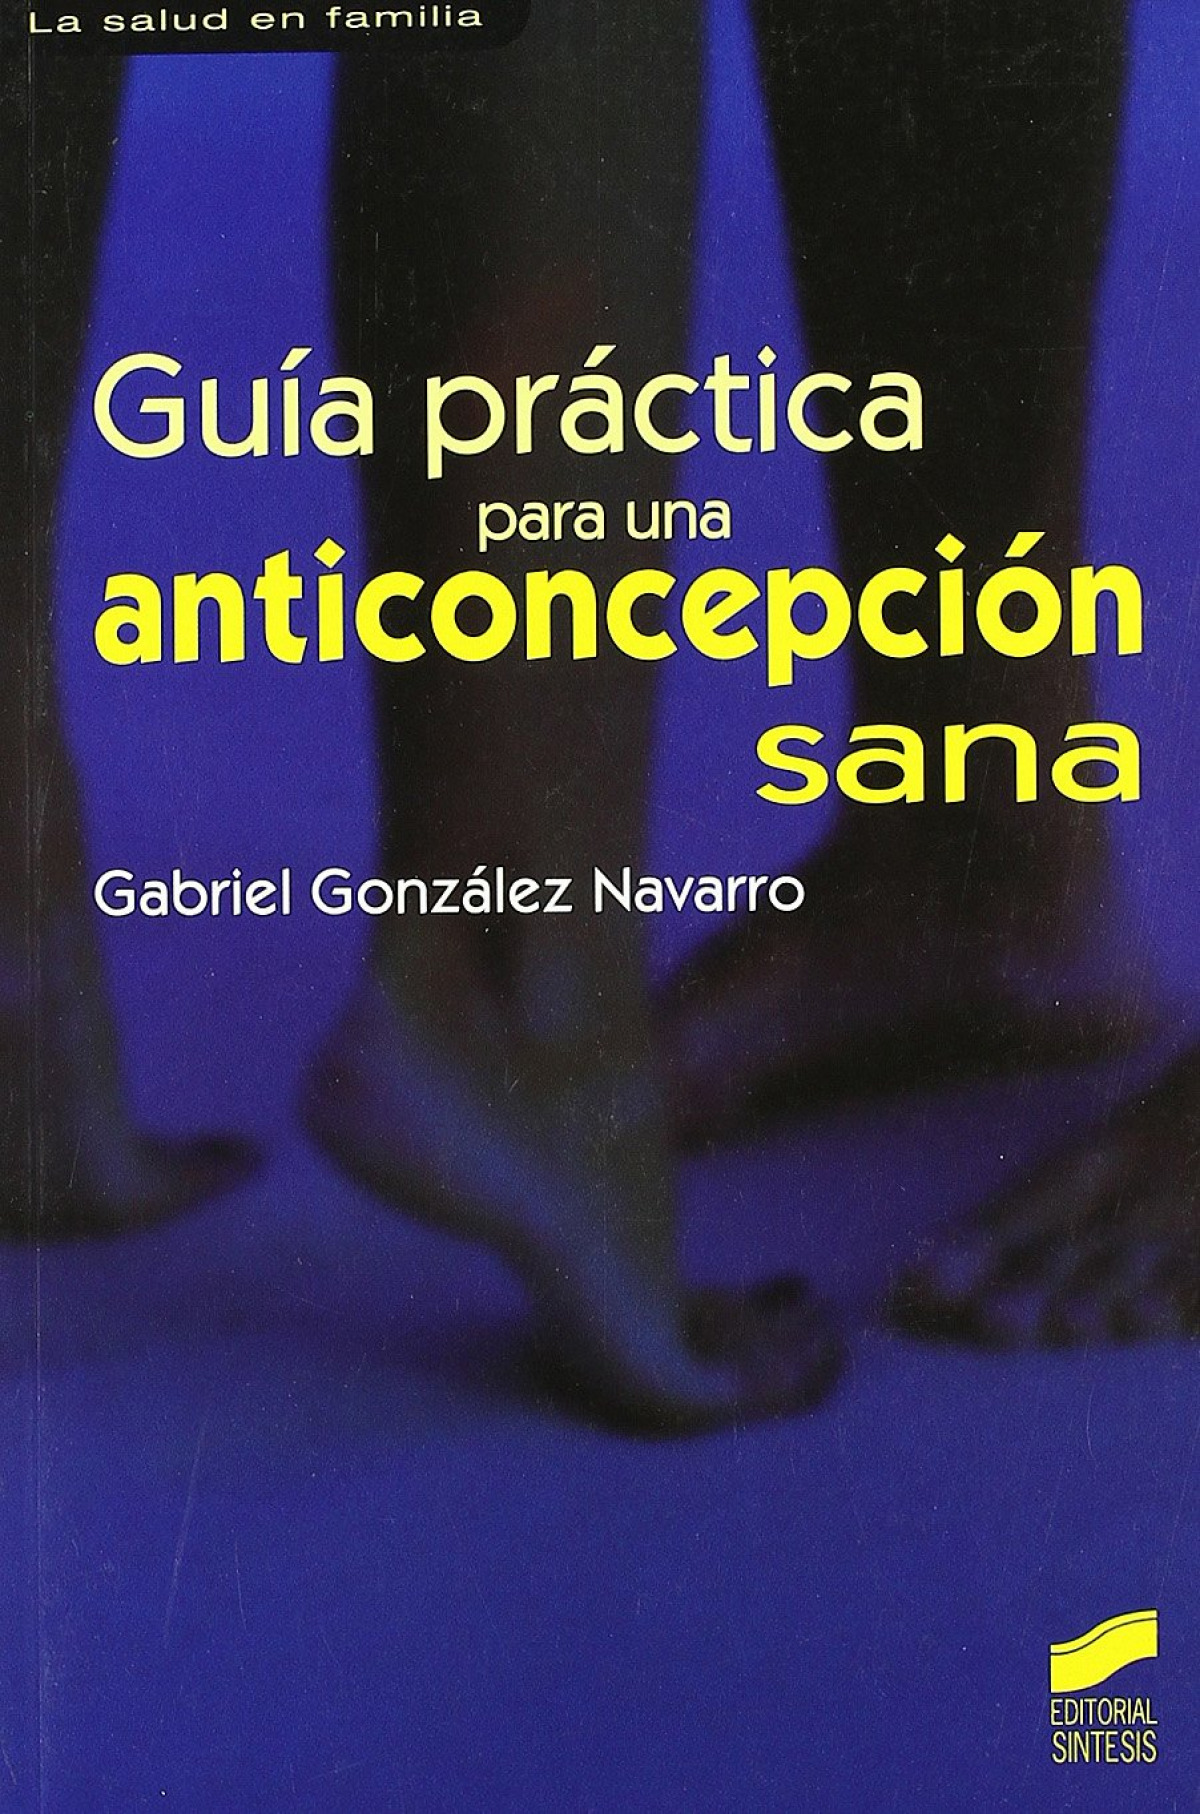 Guia practica para una concepcion sana.(salud en familia) - González Navarro, Gabriel